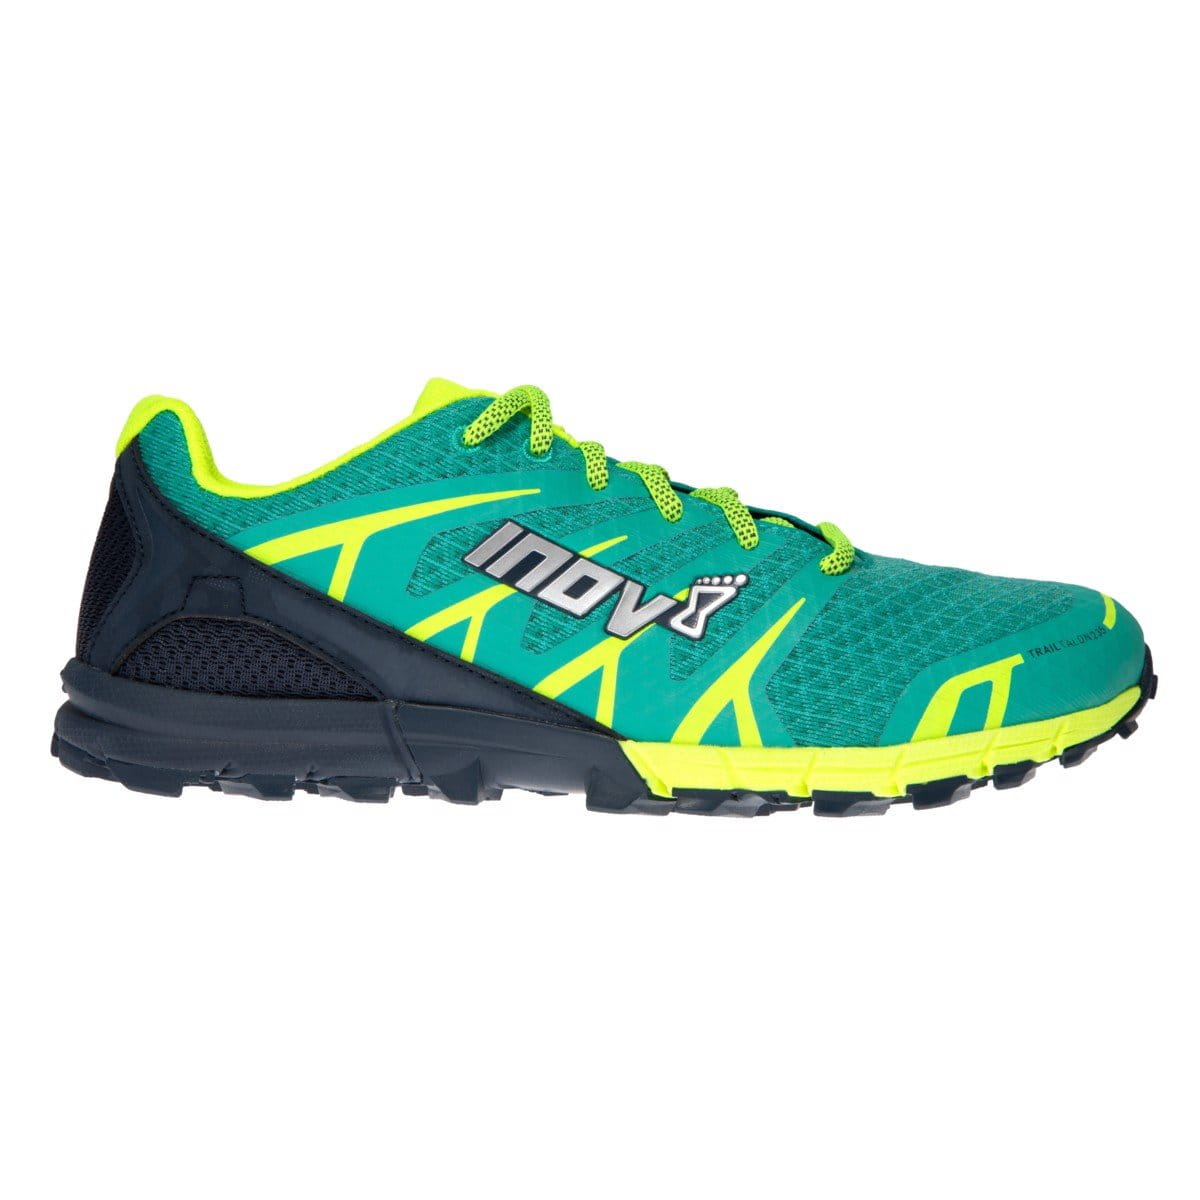 Dámské běžecké boty Inov-8  TRAIL TALON 235 W (S) teal/navy/yellow zelená/modrá/žlutá